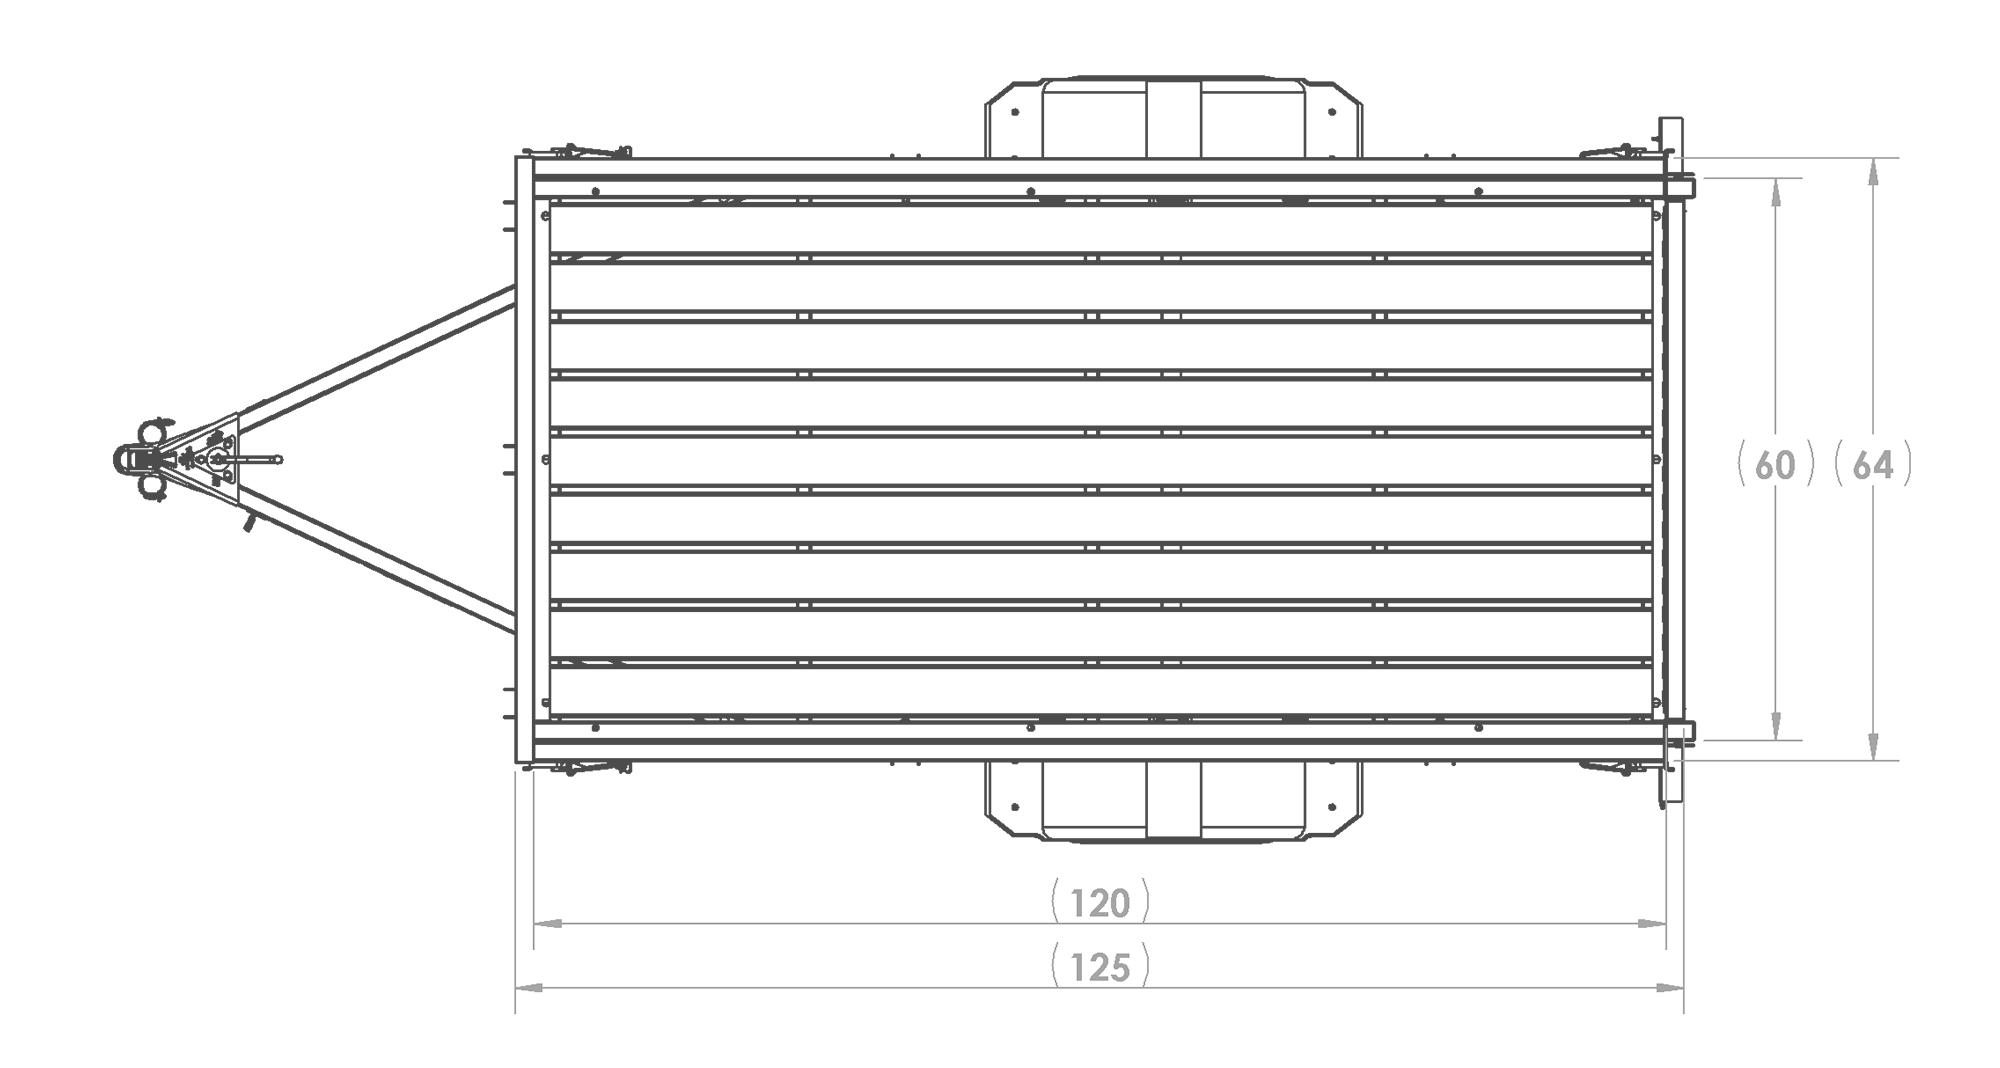 Karavan Trailer's 5x10ft. Steel Utility Trailer, Top View Measurements